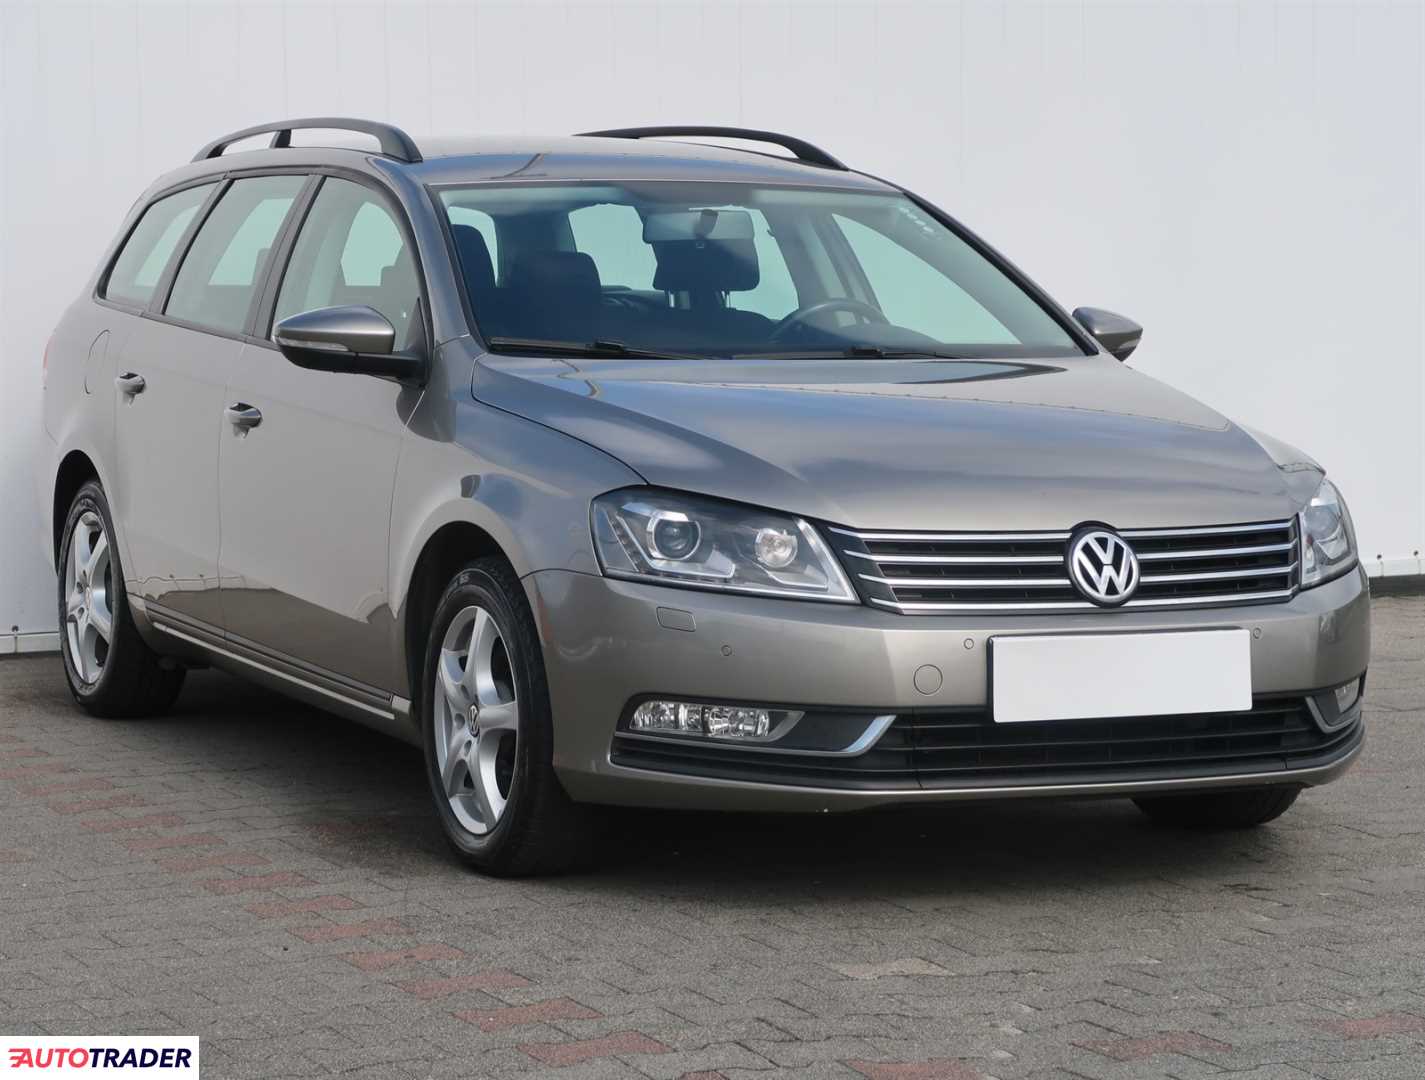 Volkswagen Passat 2014 1.6 103 KM